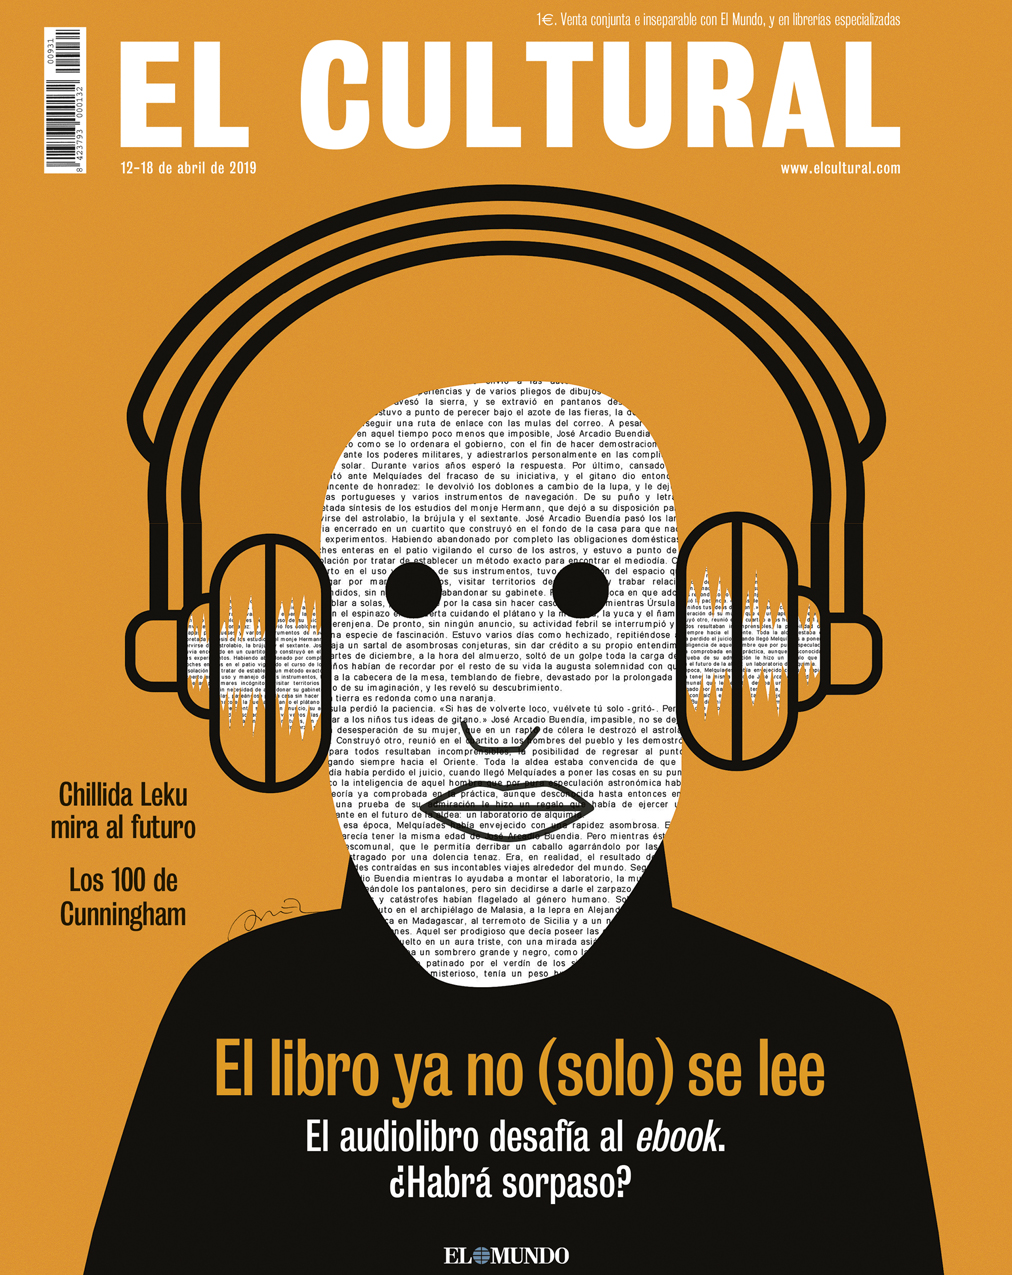 cover_el_cultural_escuchar_libros